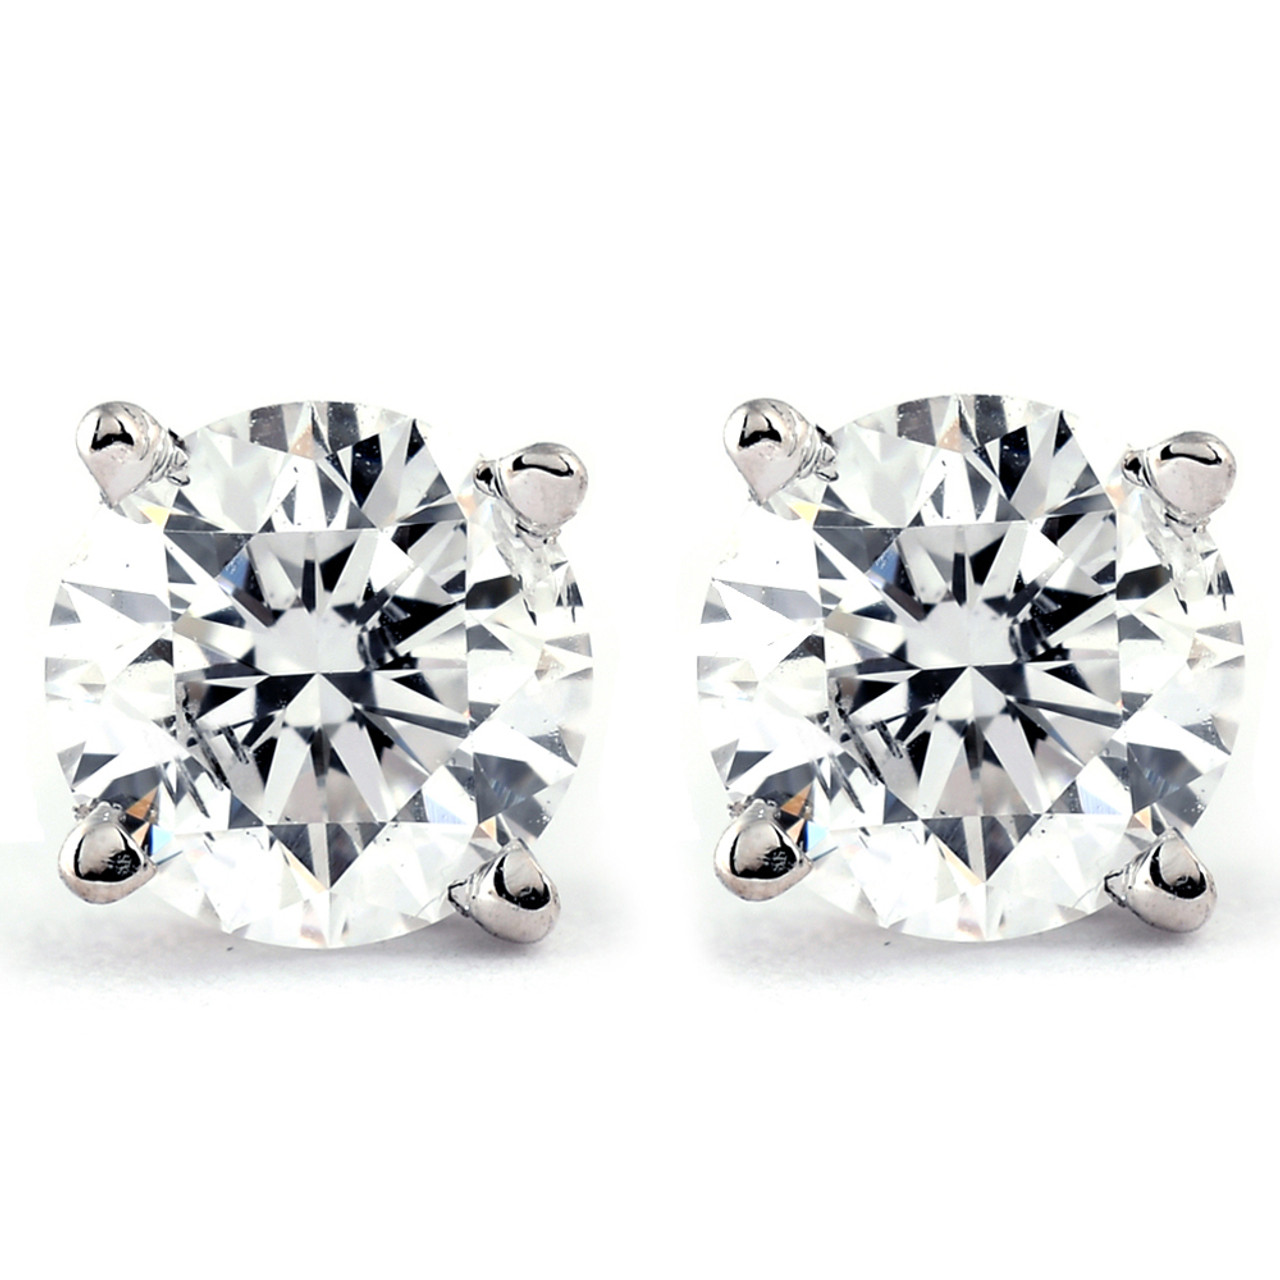 1/3 ctw 14k White Gold Diamond Stud Earrings (K-L, I2-I3)